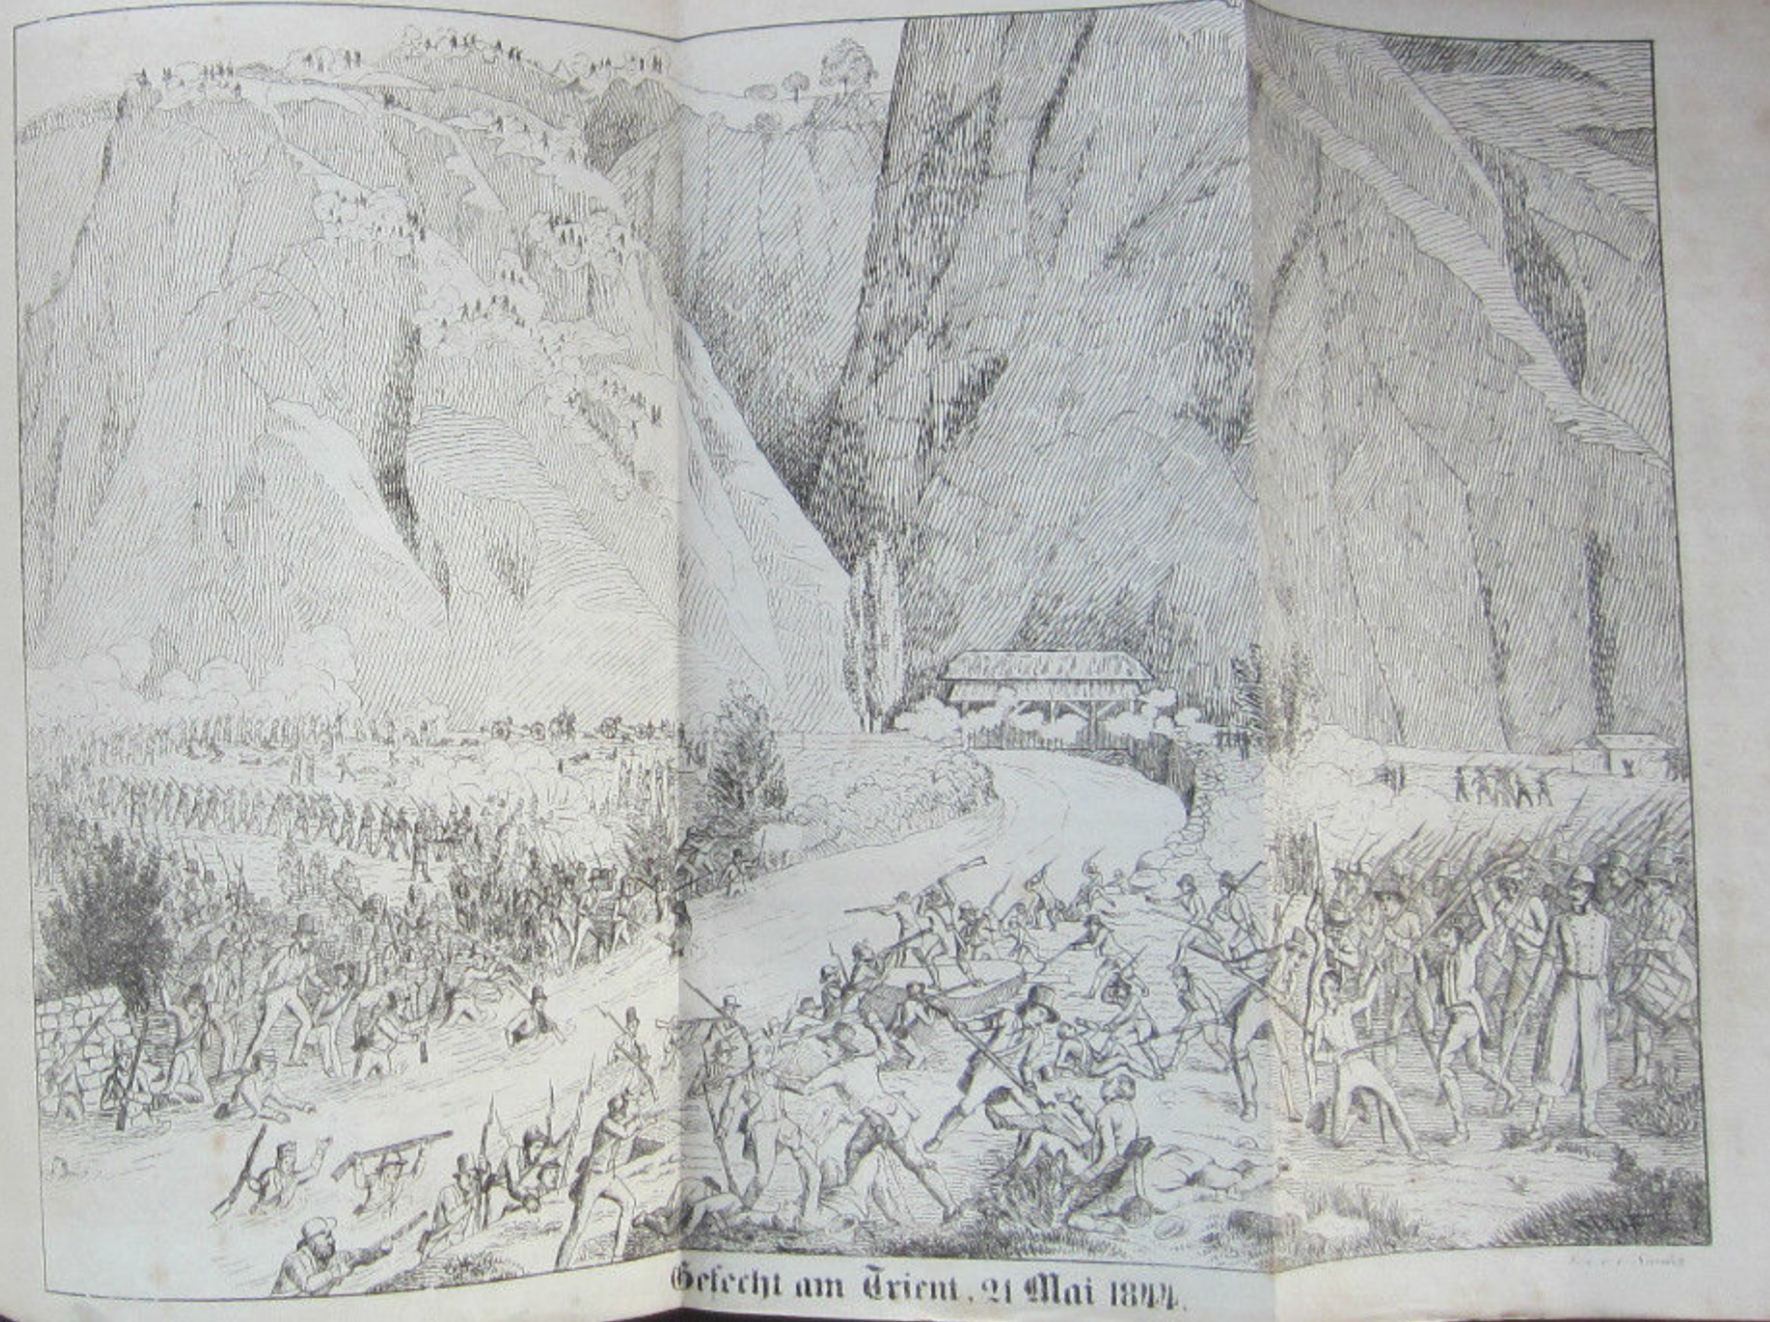 21 mai 1844. Le défilé du Trient, à Vernayaz en Valais, est le théâtre de combats féroces.